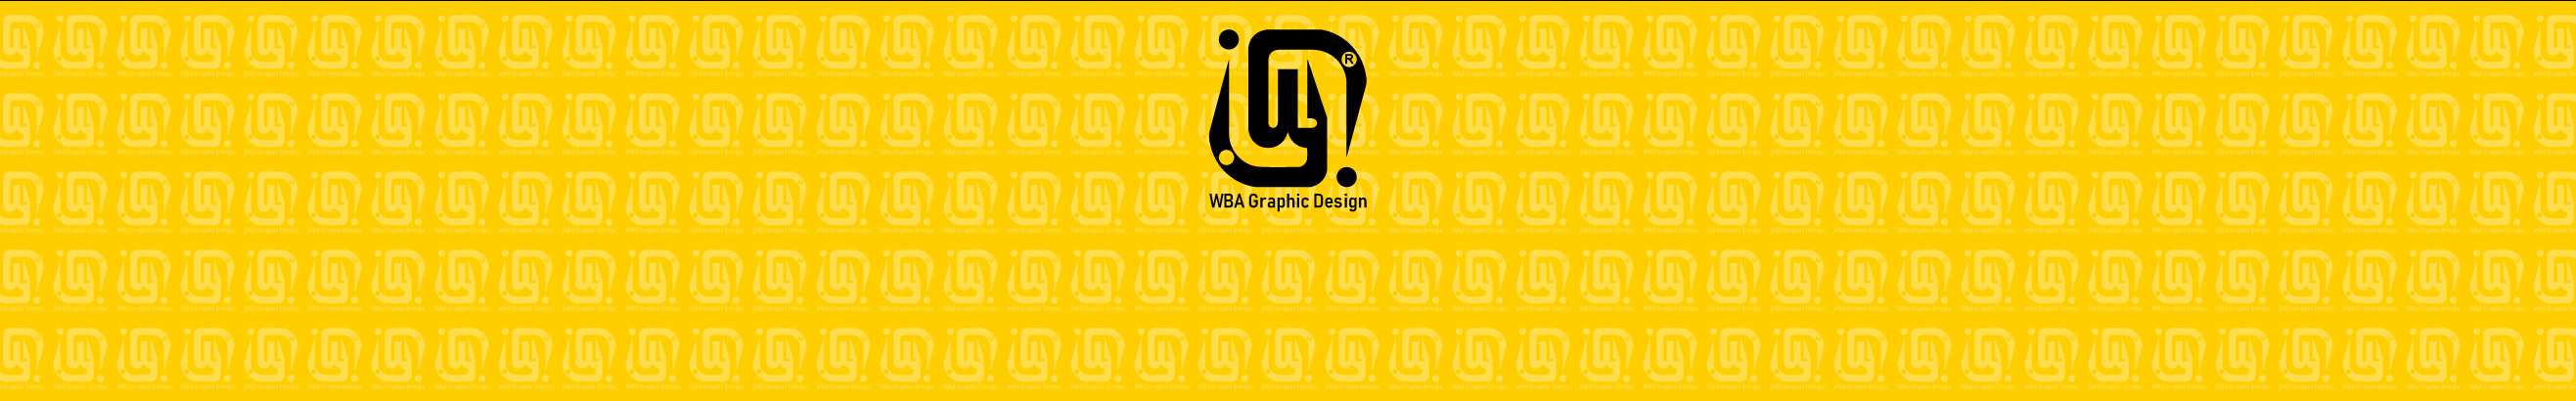 WBA Graphic Design's profile banner